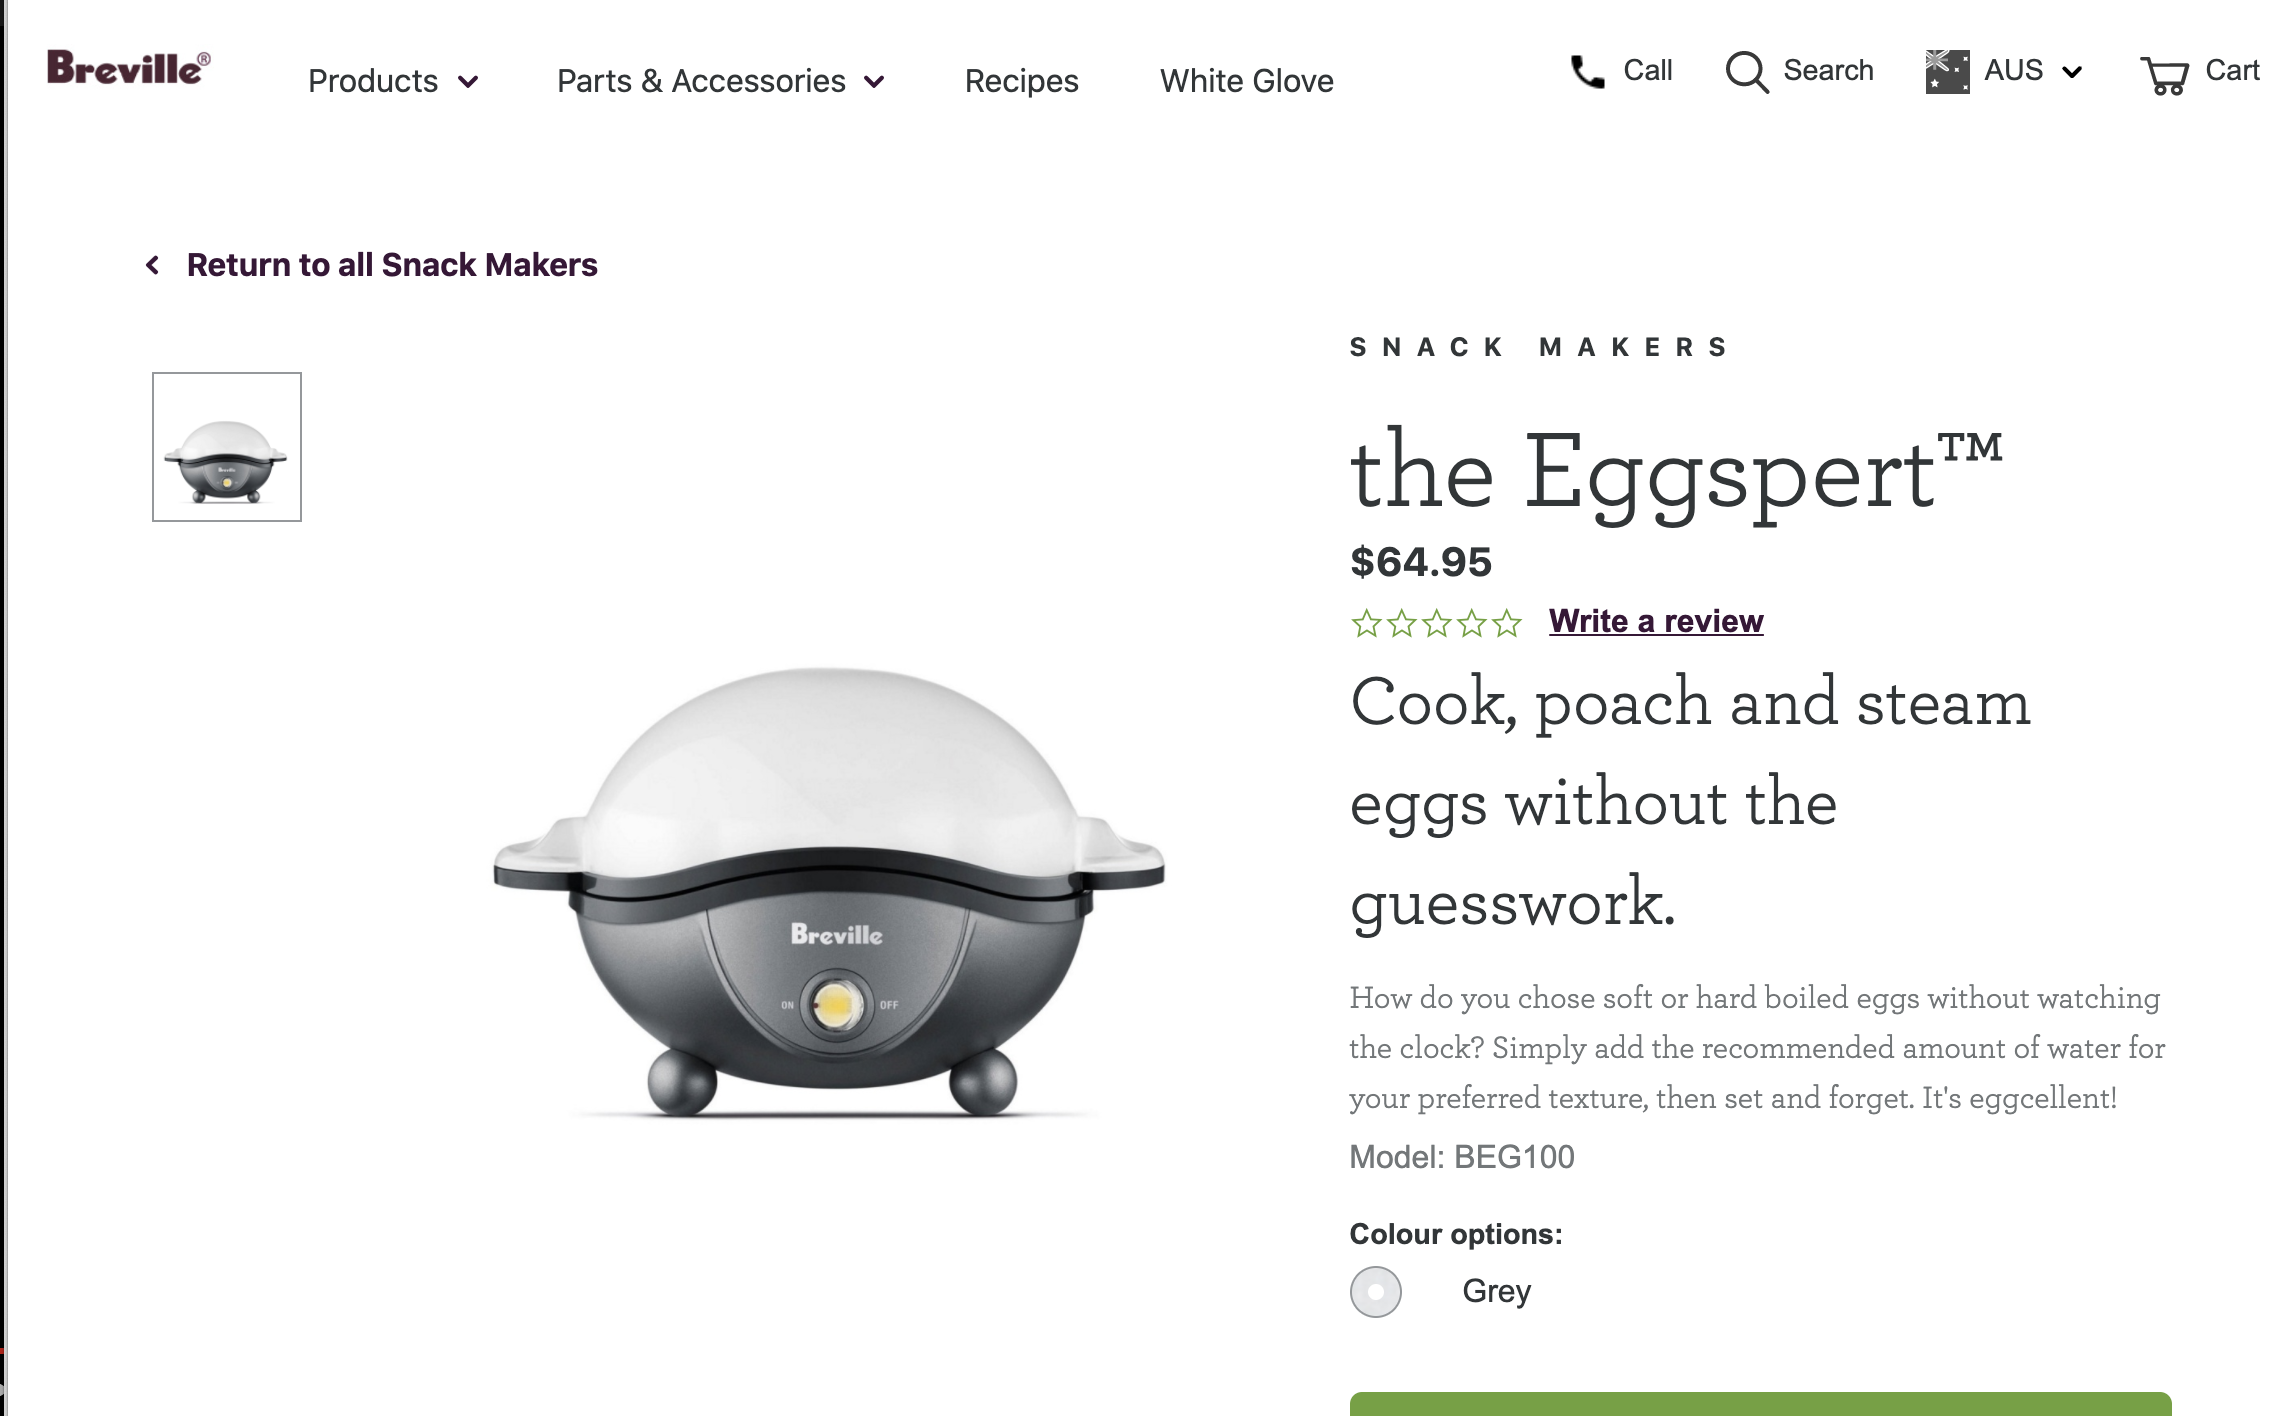 An egg cooker